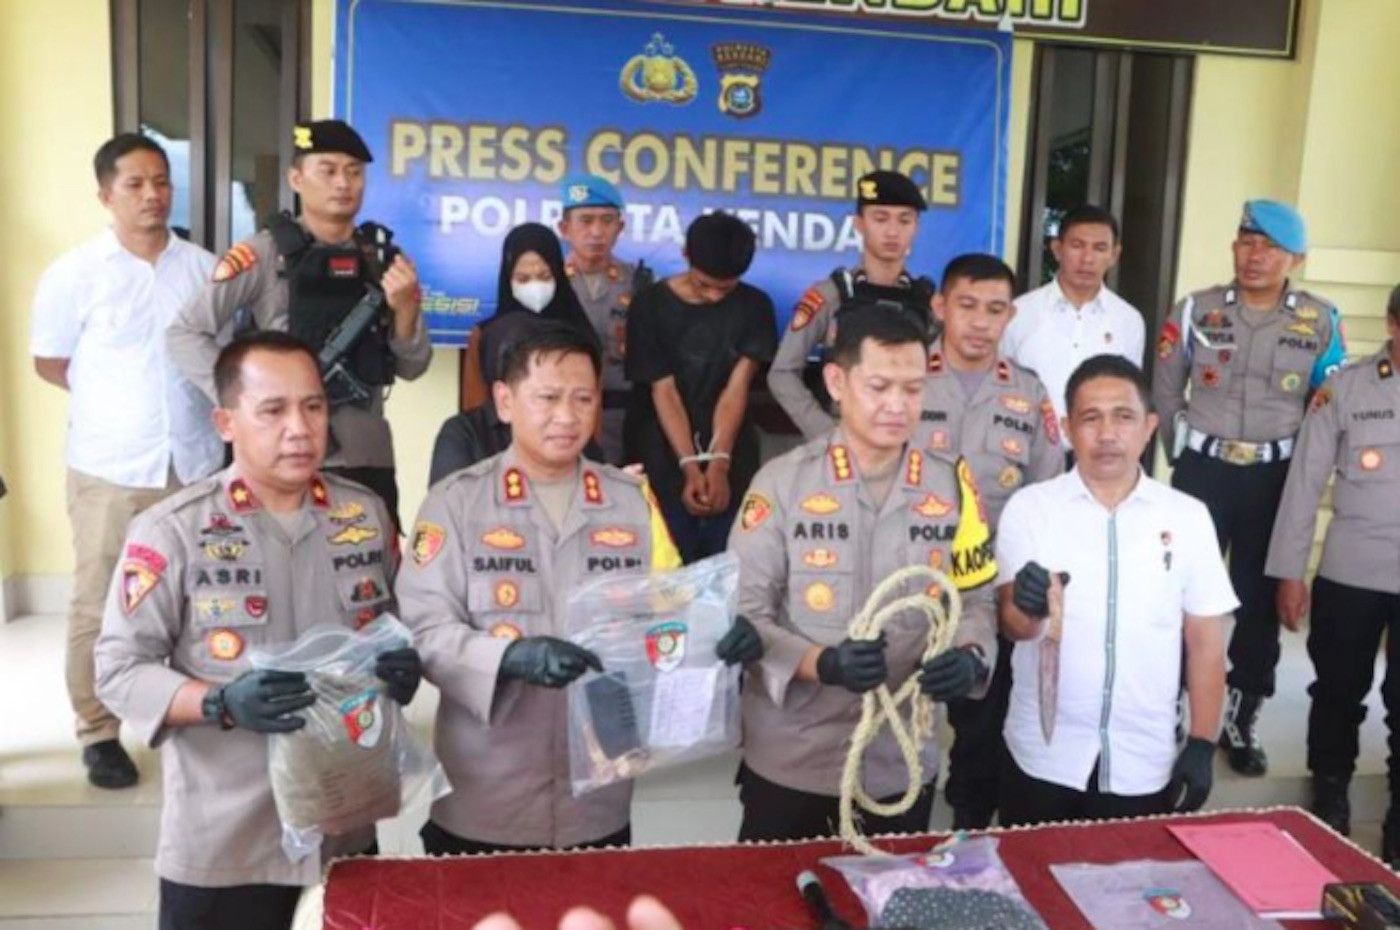 Polisi Ungkap Kasus Pembunuhan Berencana di Kendari, Pelakunya Tak Disangka - JPNN.com